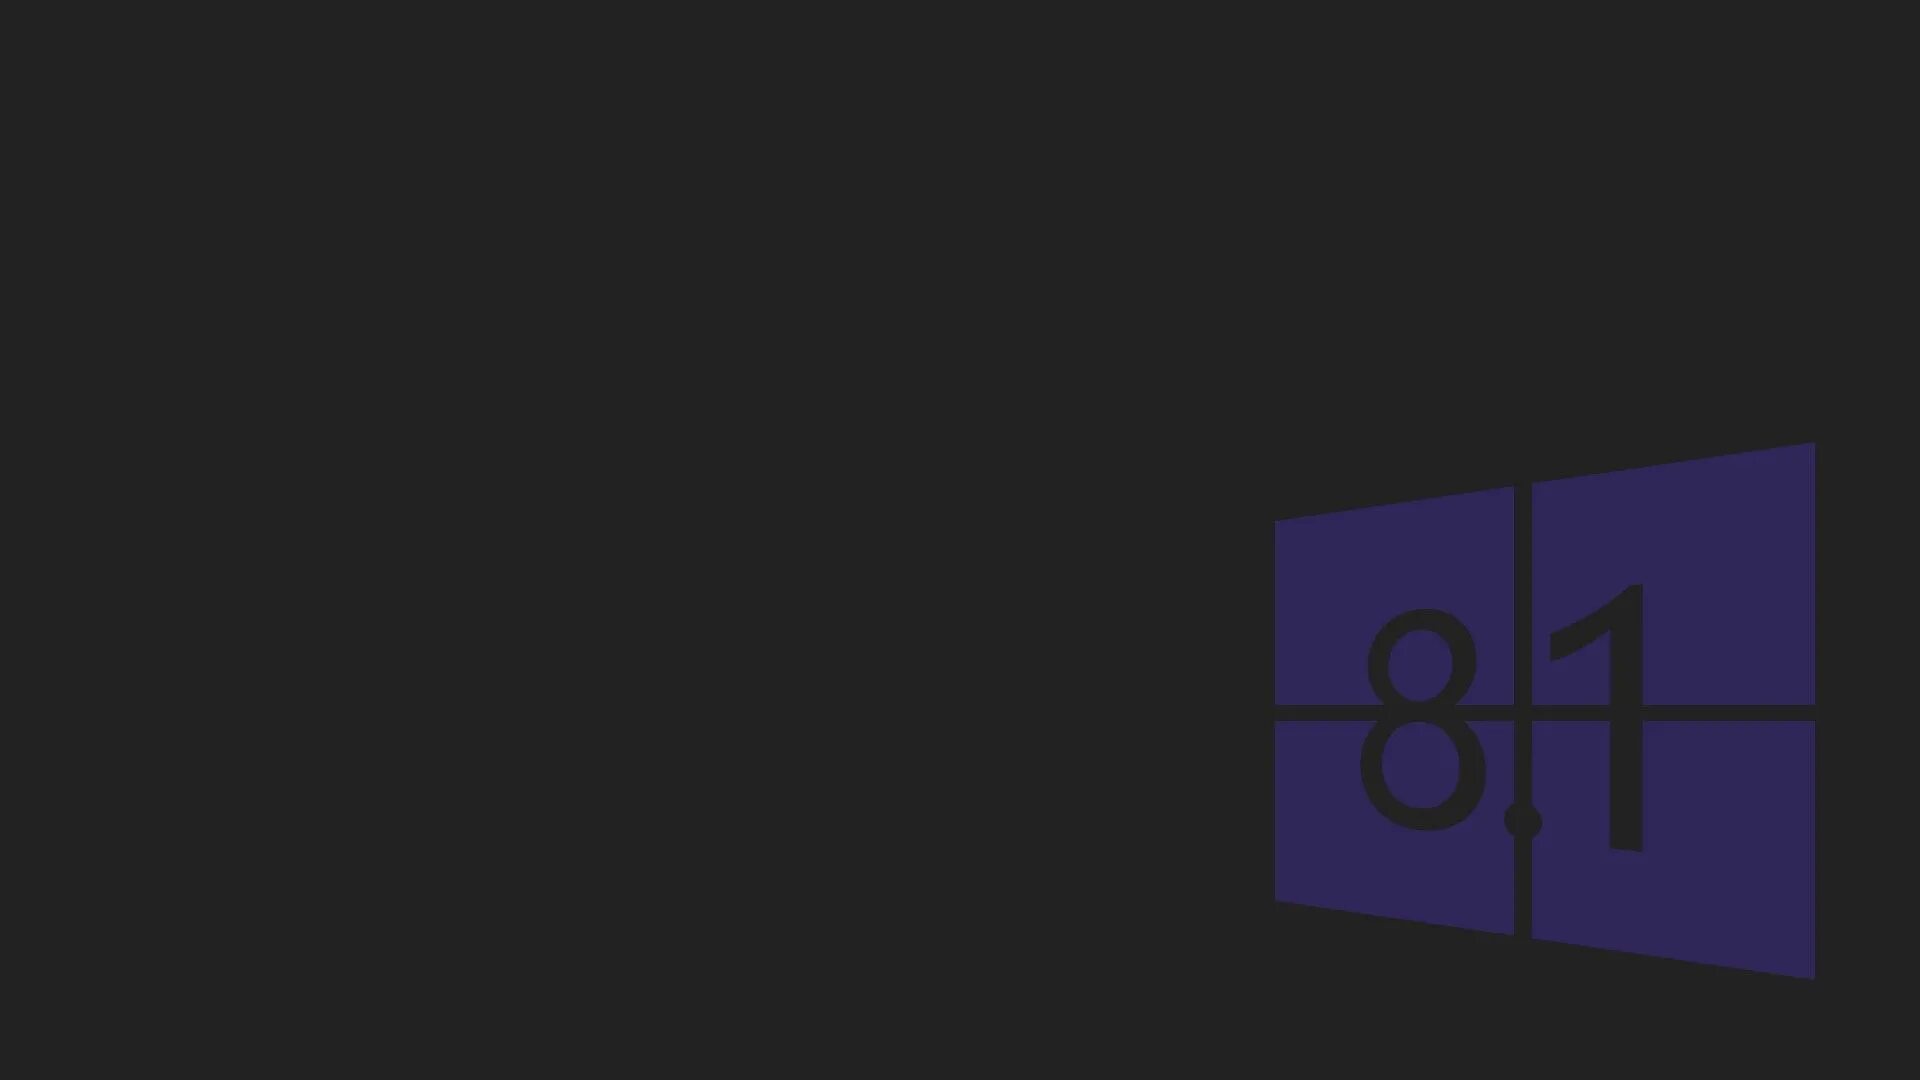 1 8 1 66 5 54. Обои Windows. Картинки Windows 8. Windows 8.1 обои. Заставка виндовс 8.